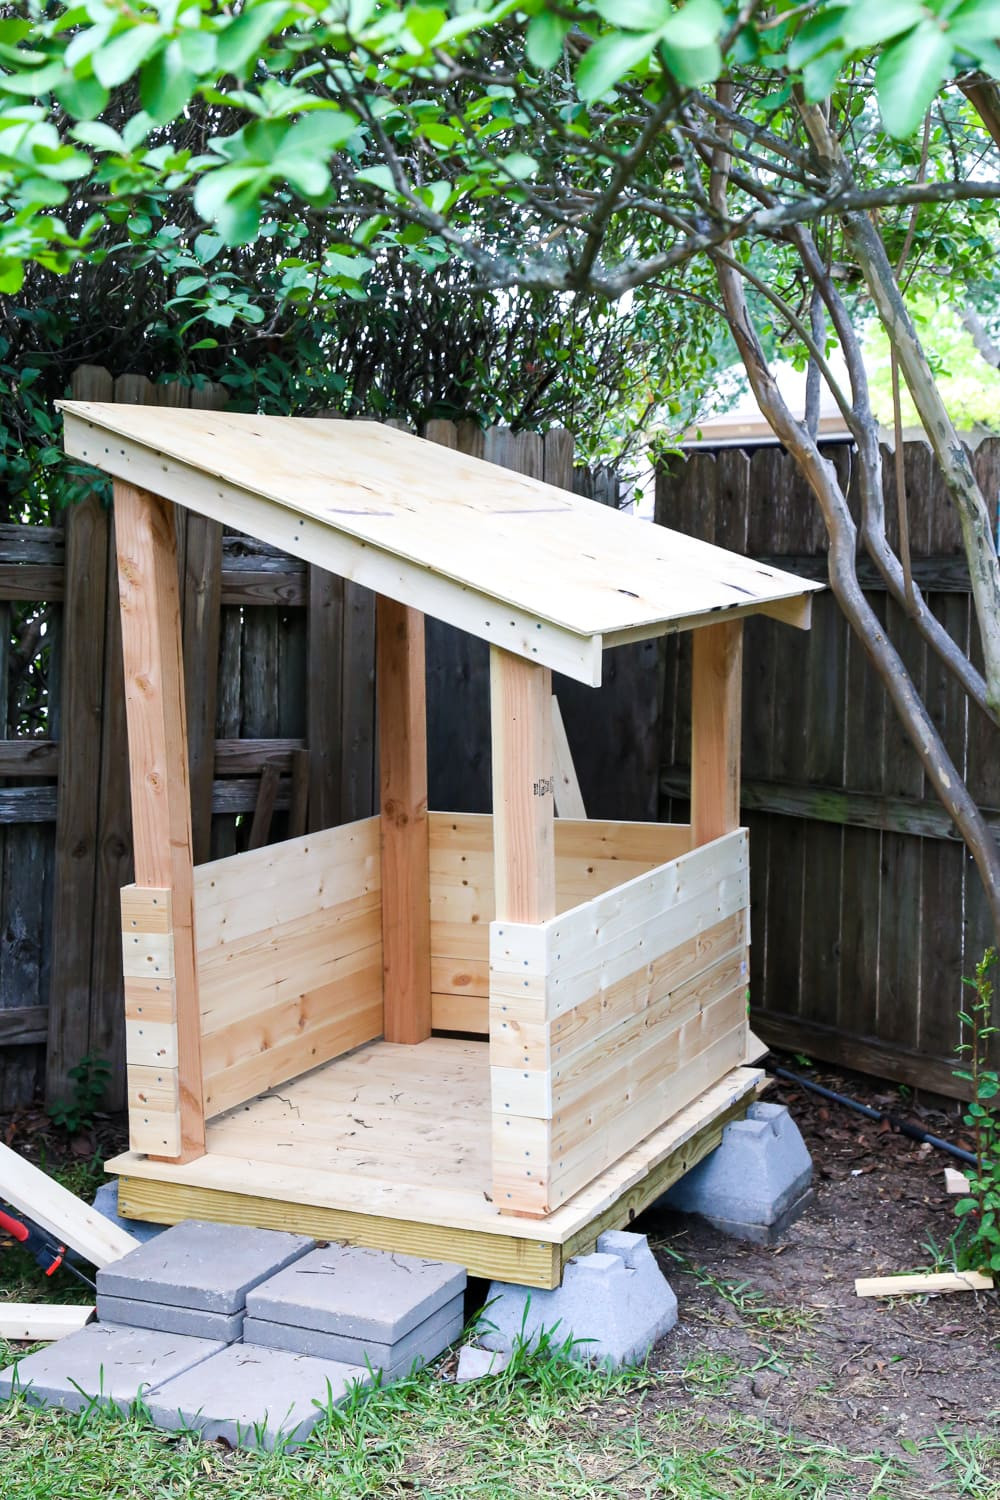 DIY Outdoor Playhouse
 DIY Playhouse How to Build a Backyard Playhouse for Your